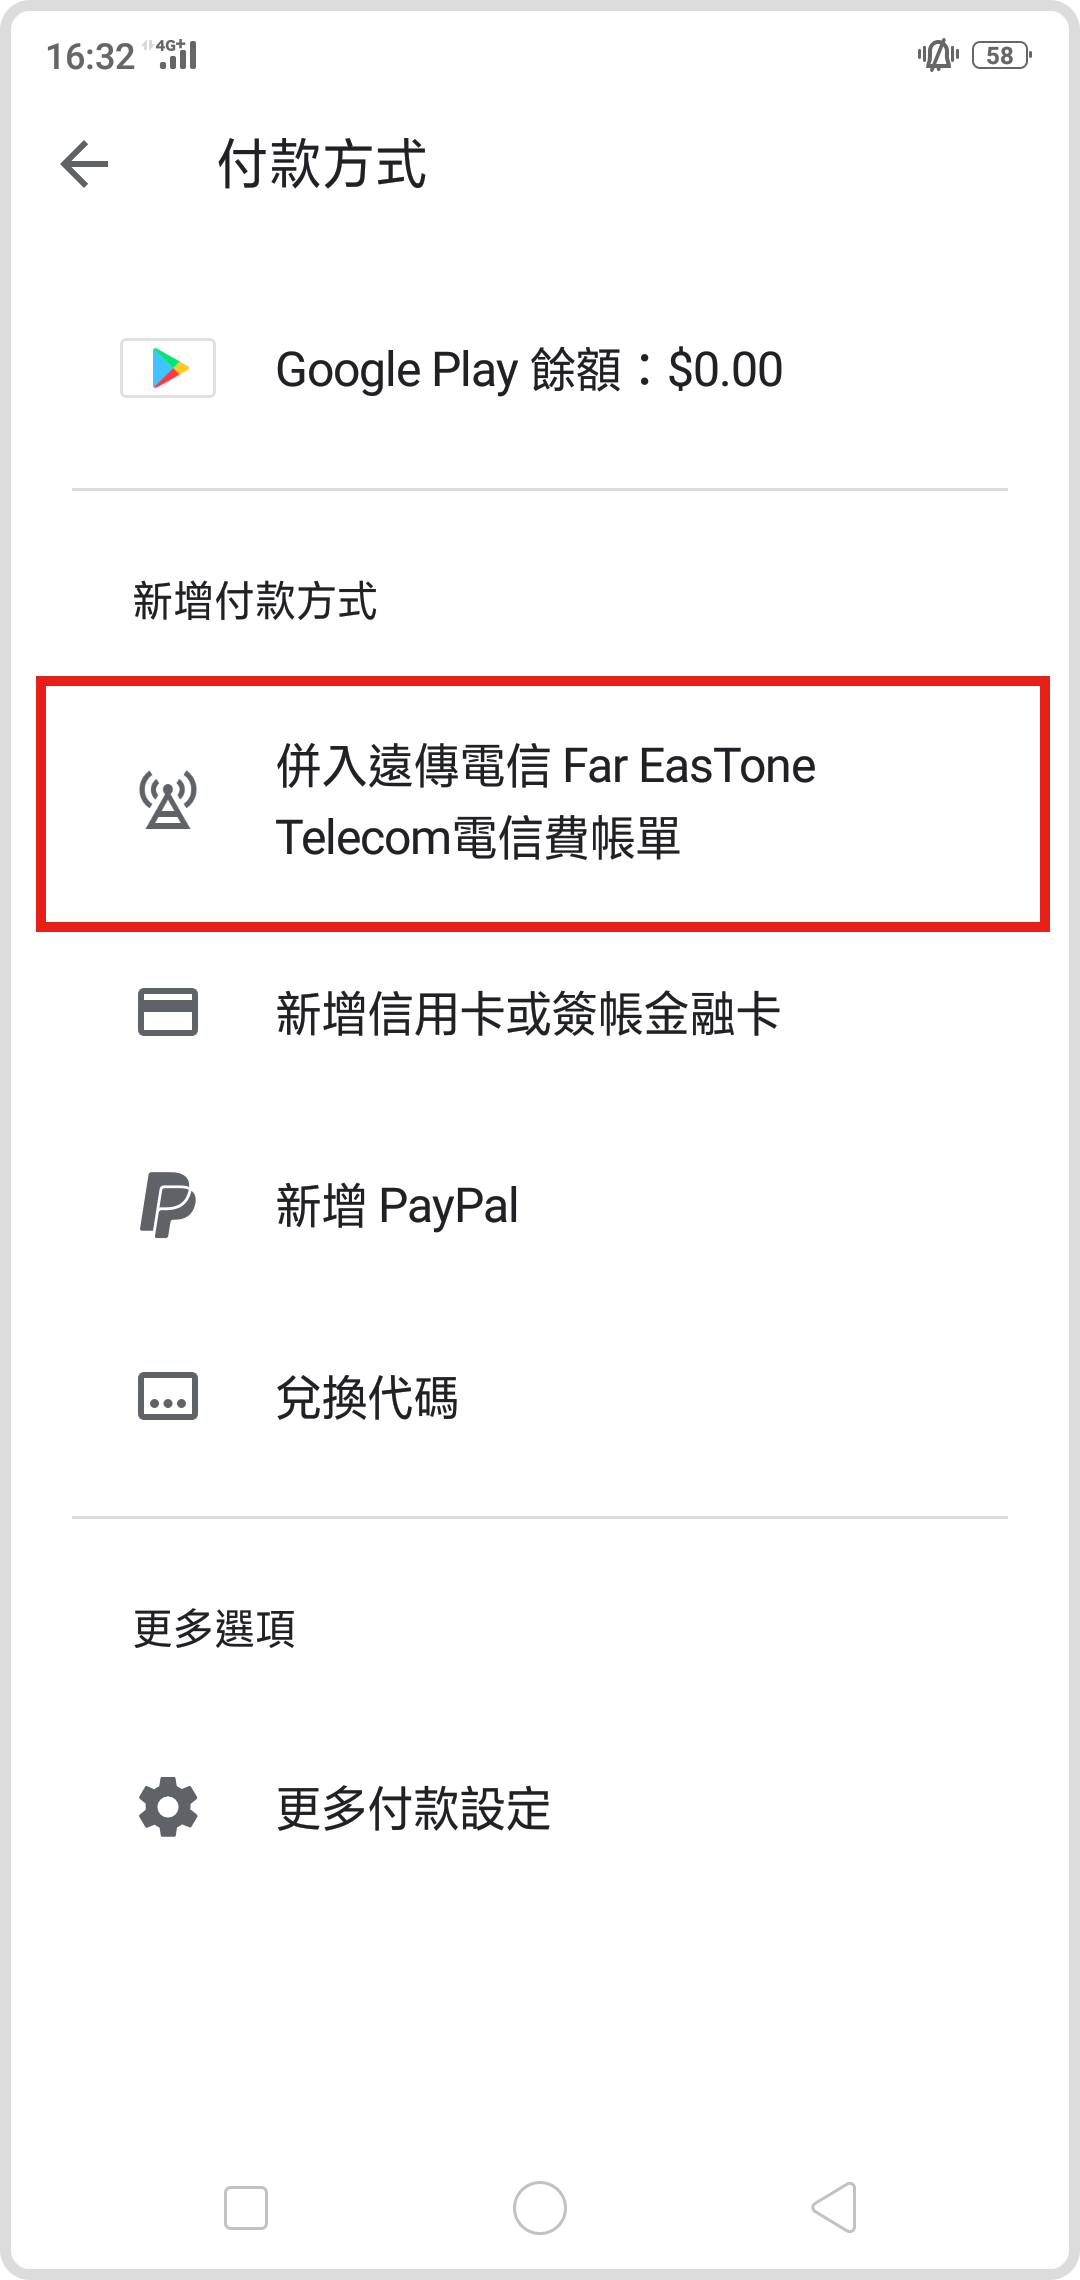 Step 3 點擊”併入遠傳電信FarEastone Telecom電信費帳單”後按下啟用